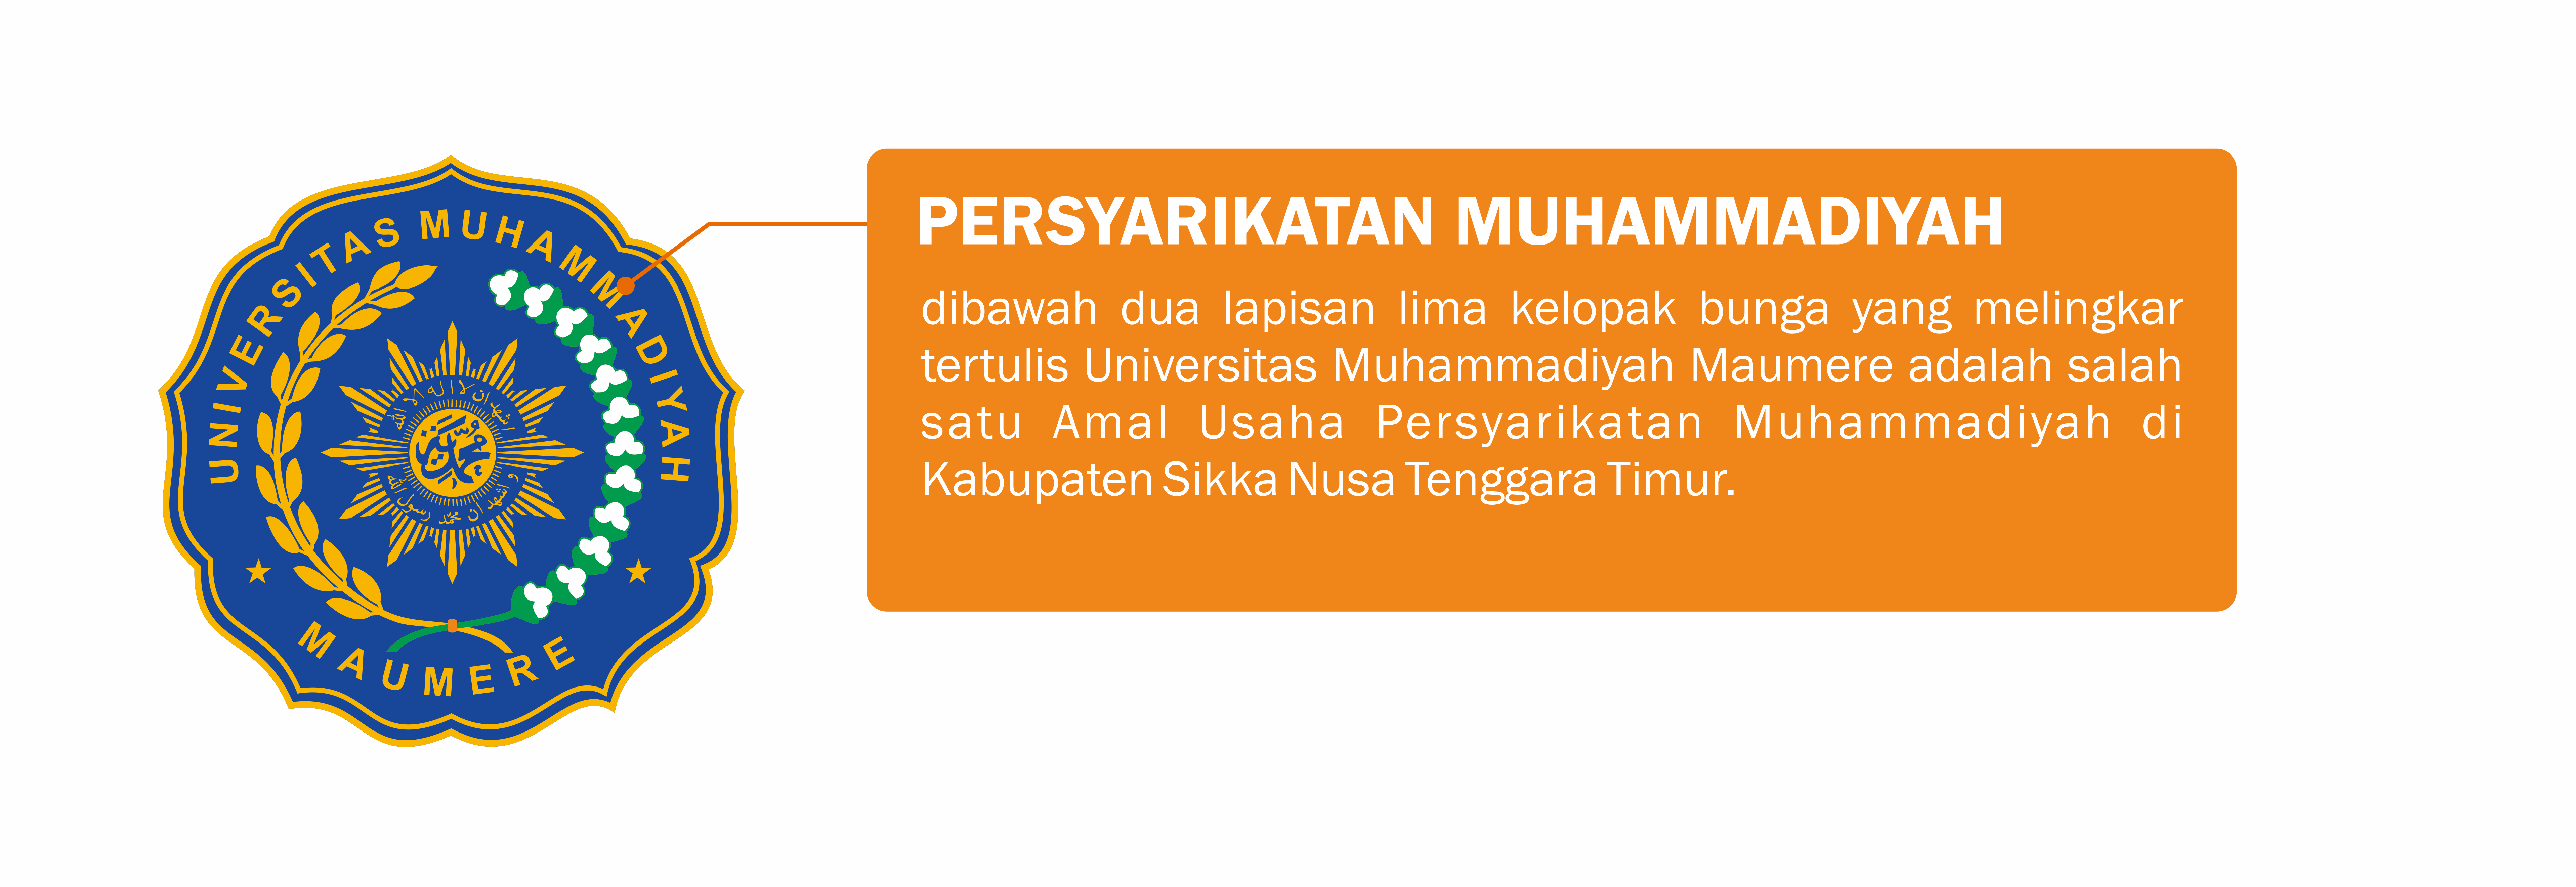 Persyarikatan Muhammadiyah